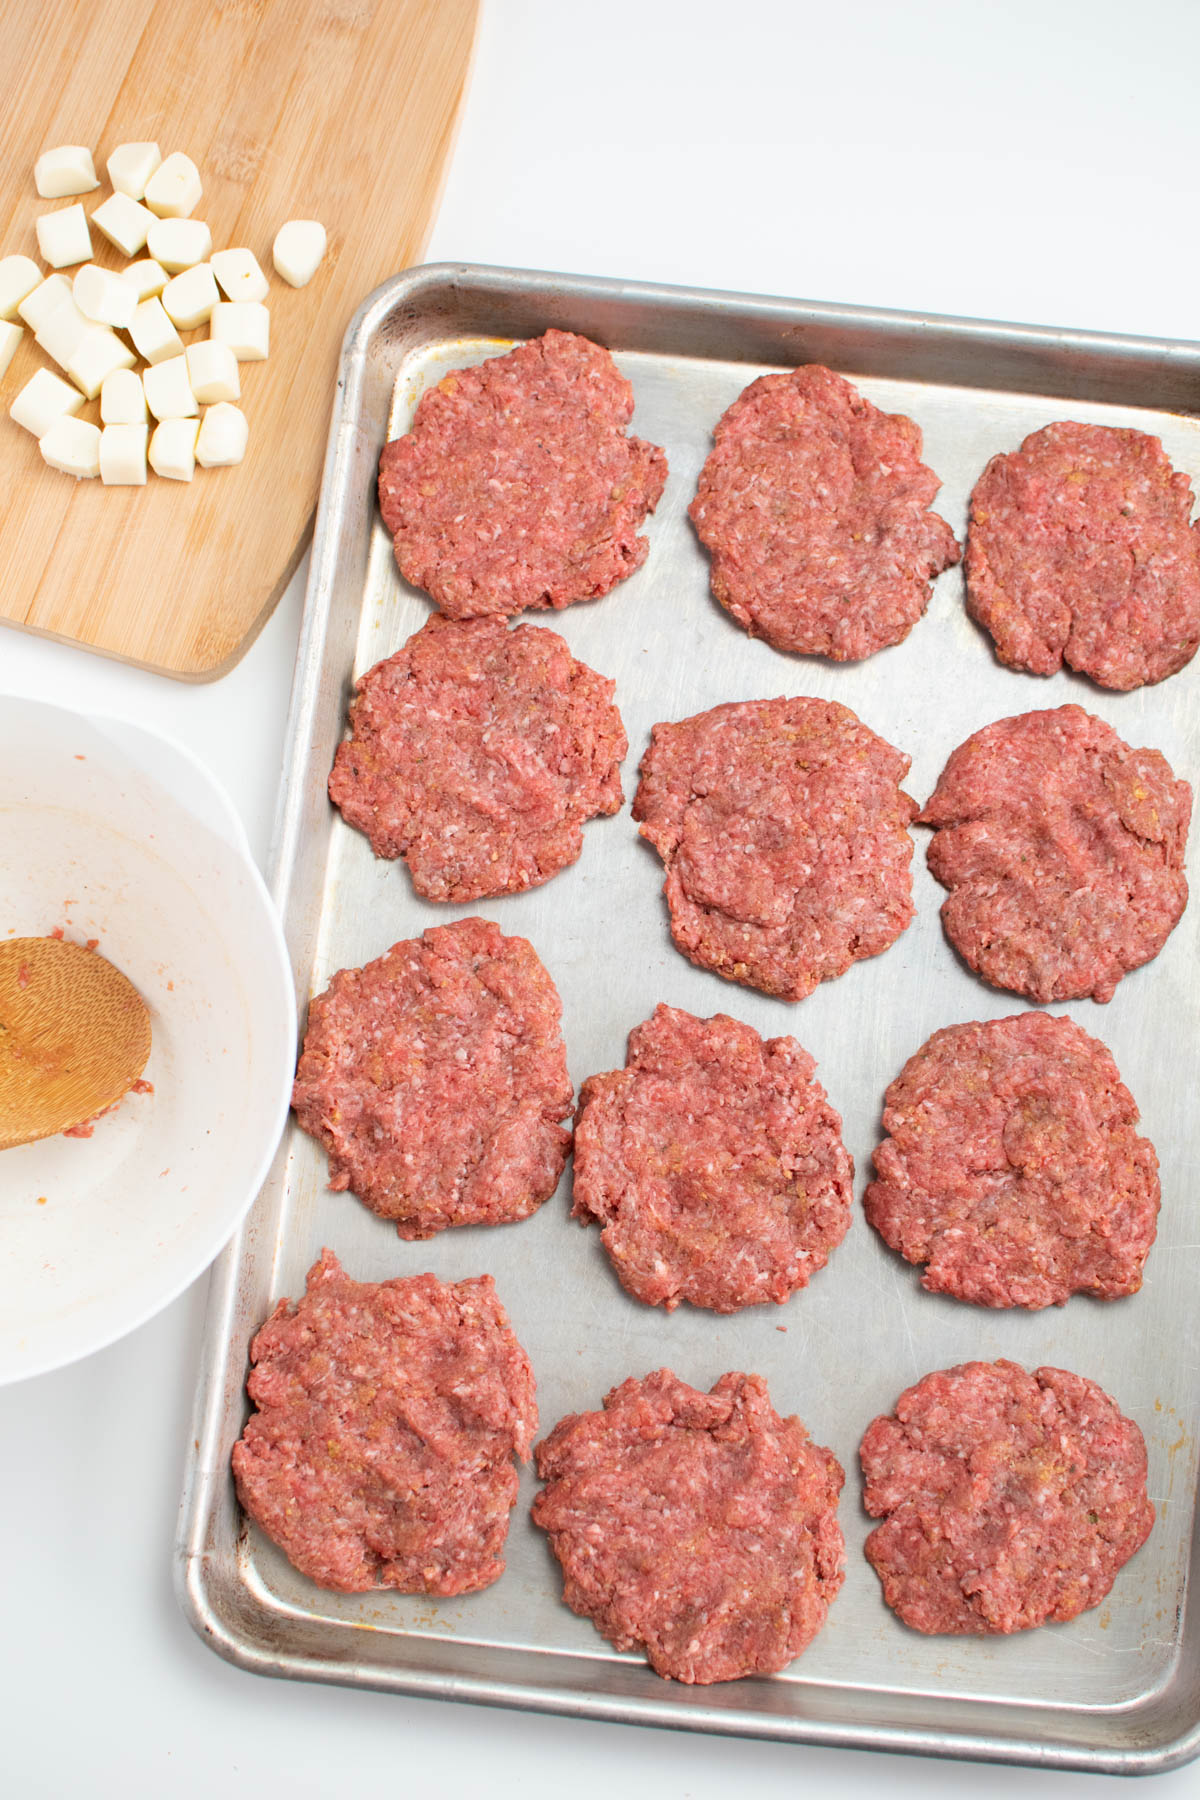 Twelve raw hamburger patties on metal sheet pan.